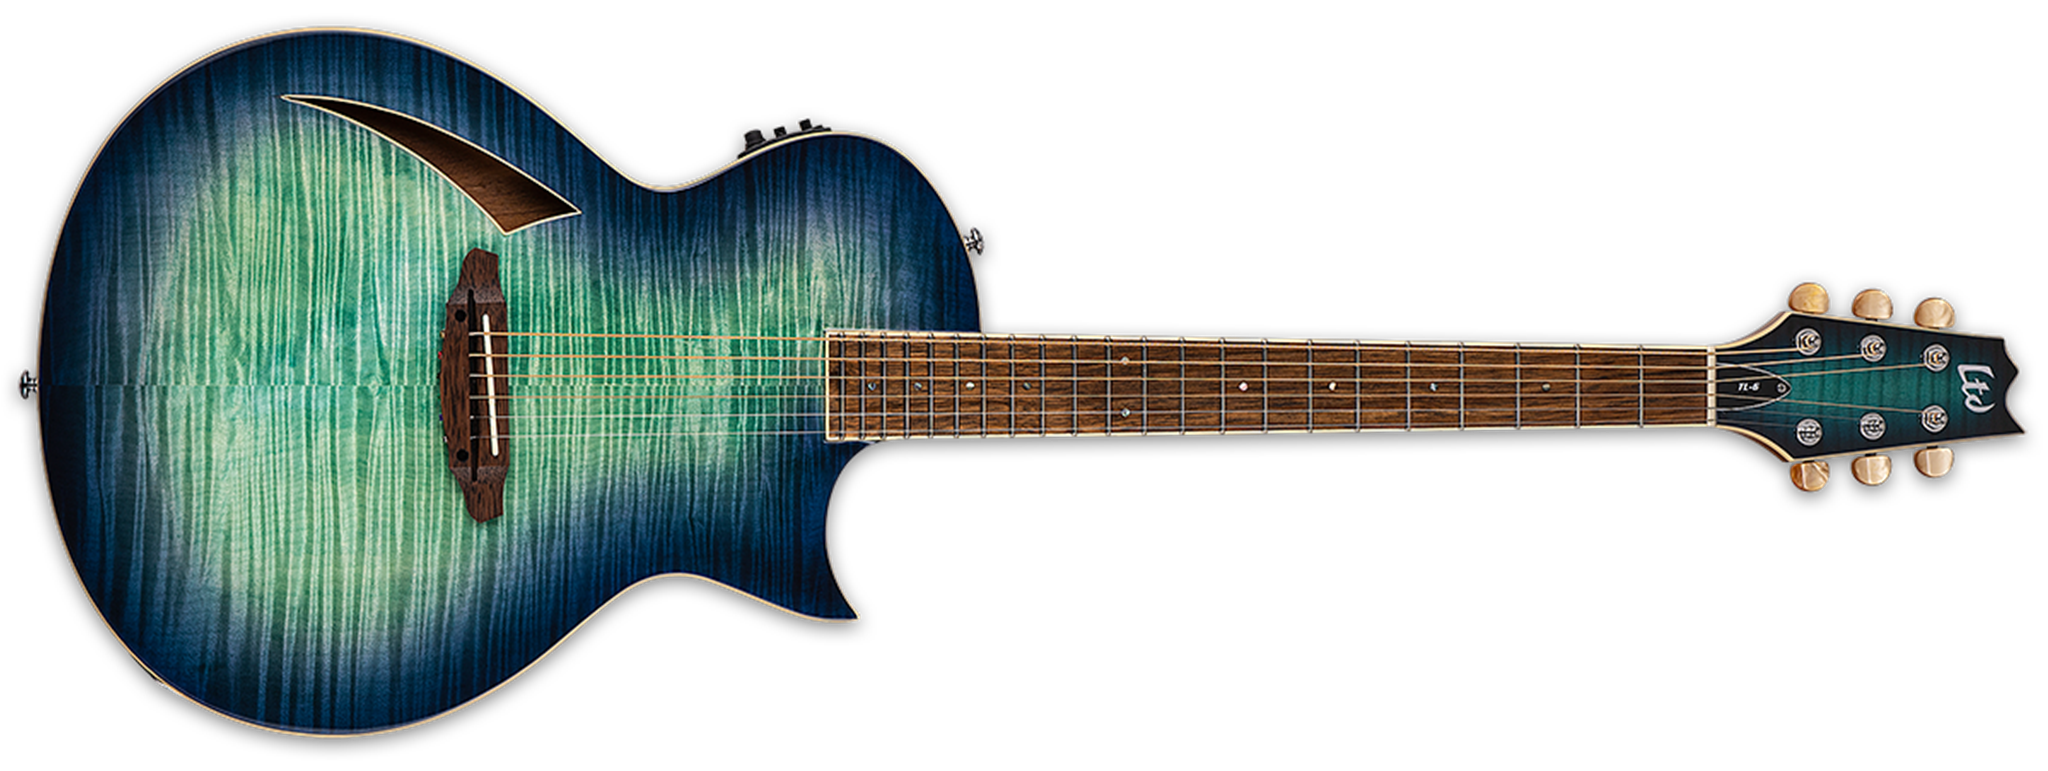 ESP/LTD TL-6 Aqua Marine Burst 6-String Acoustic Electric Guitar